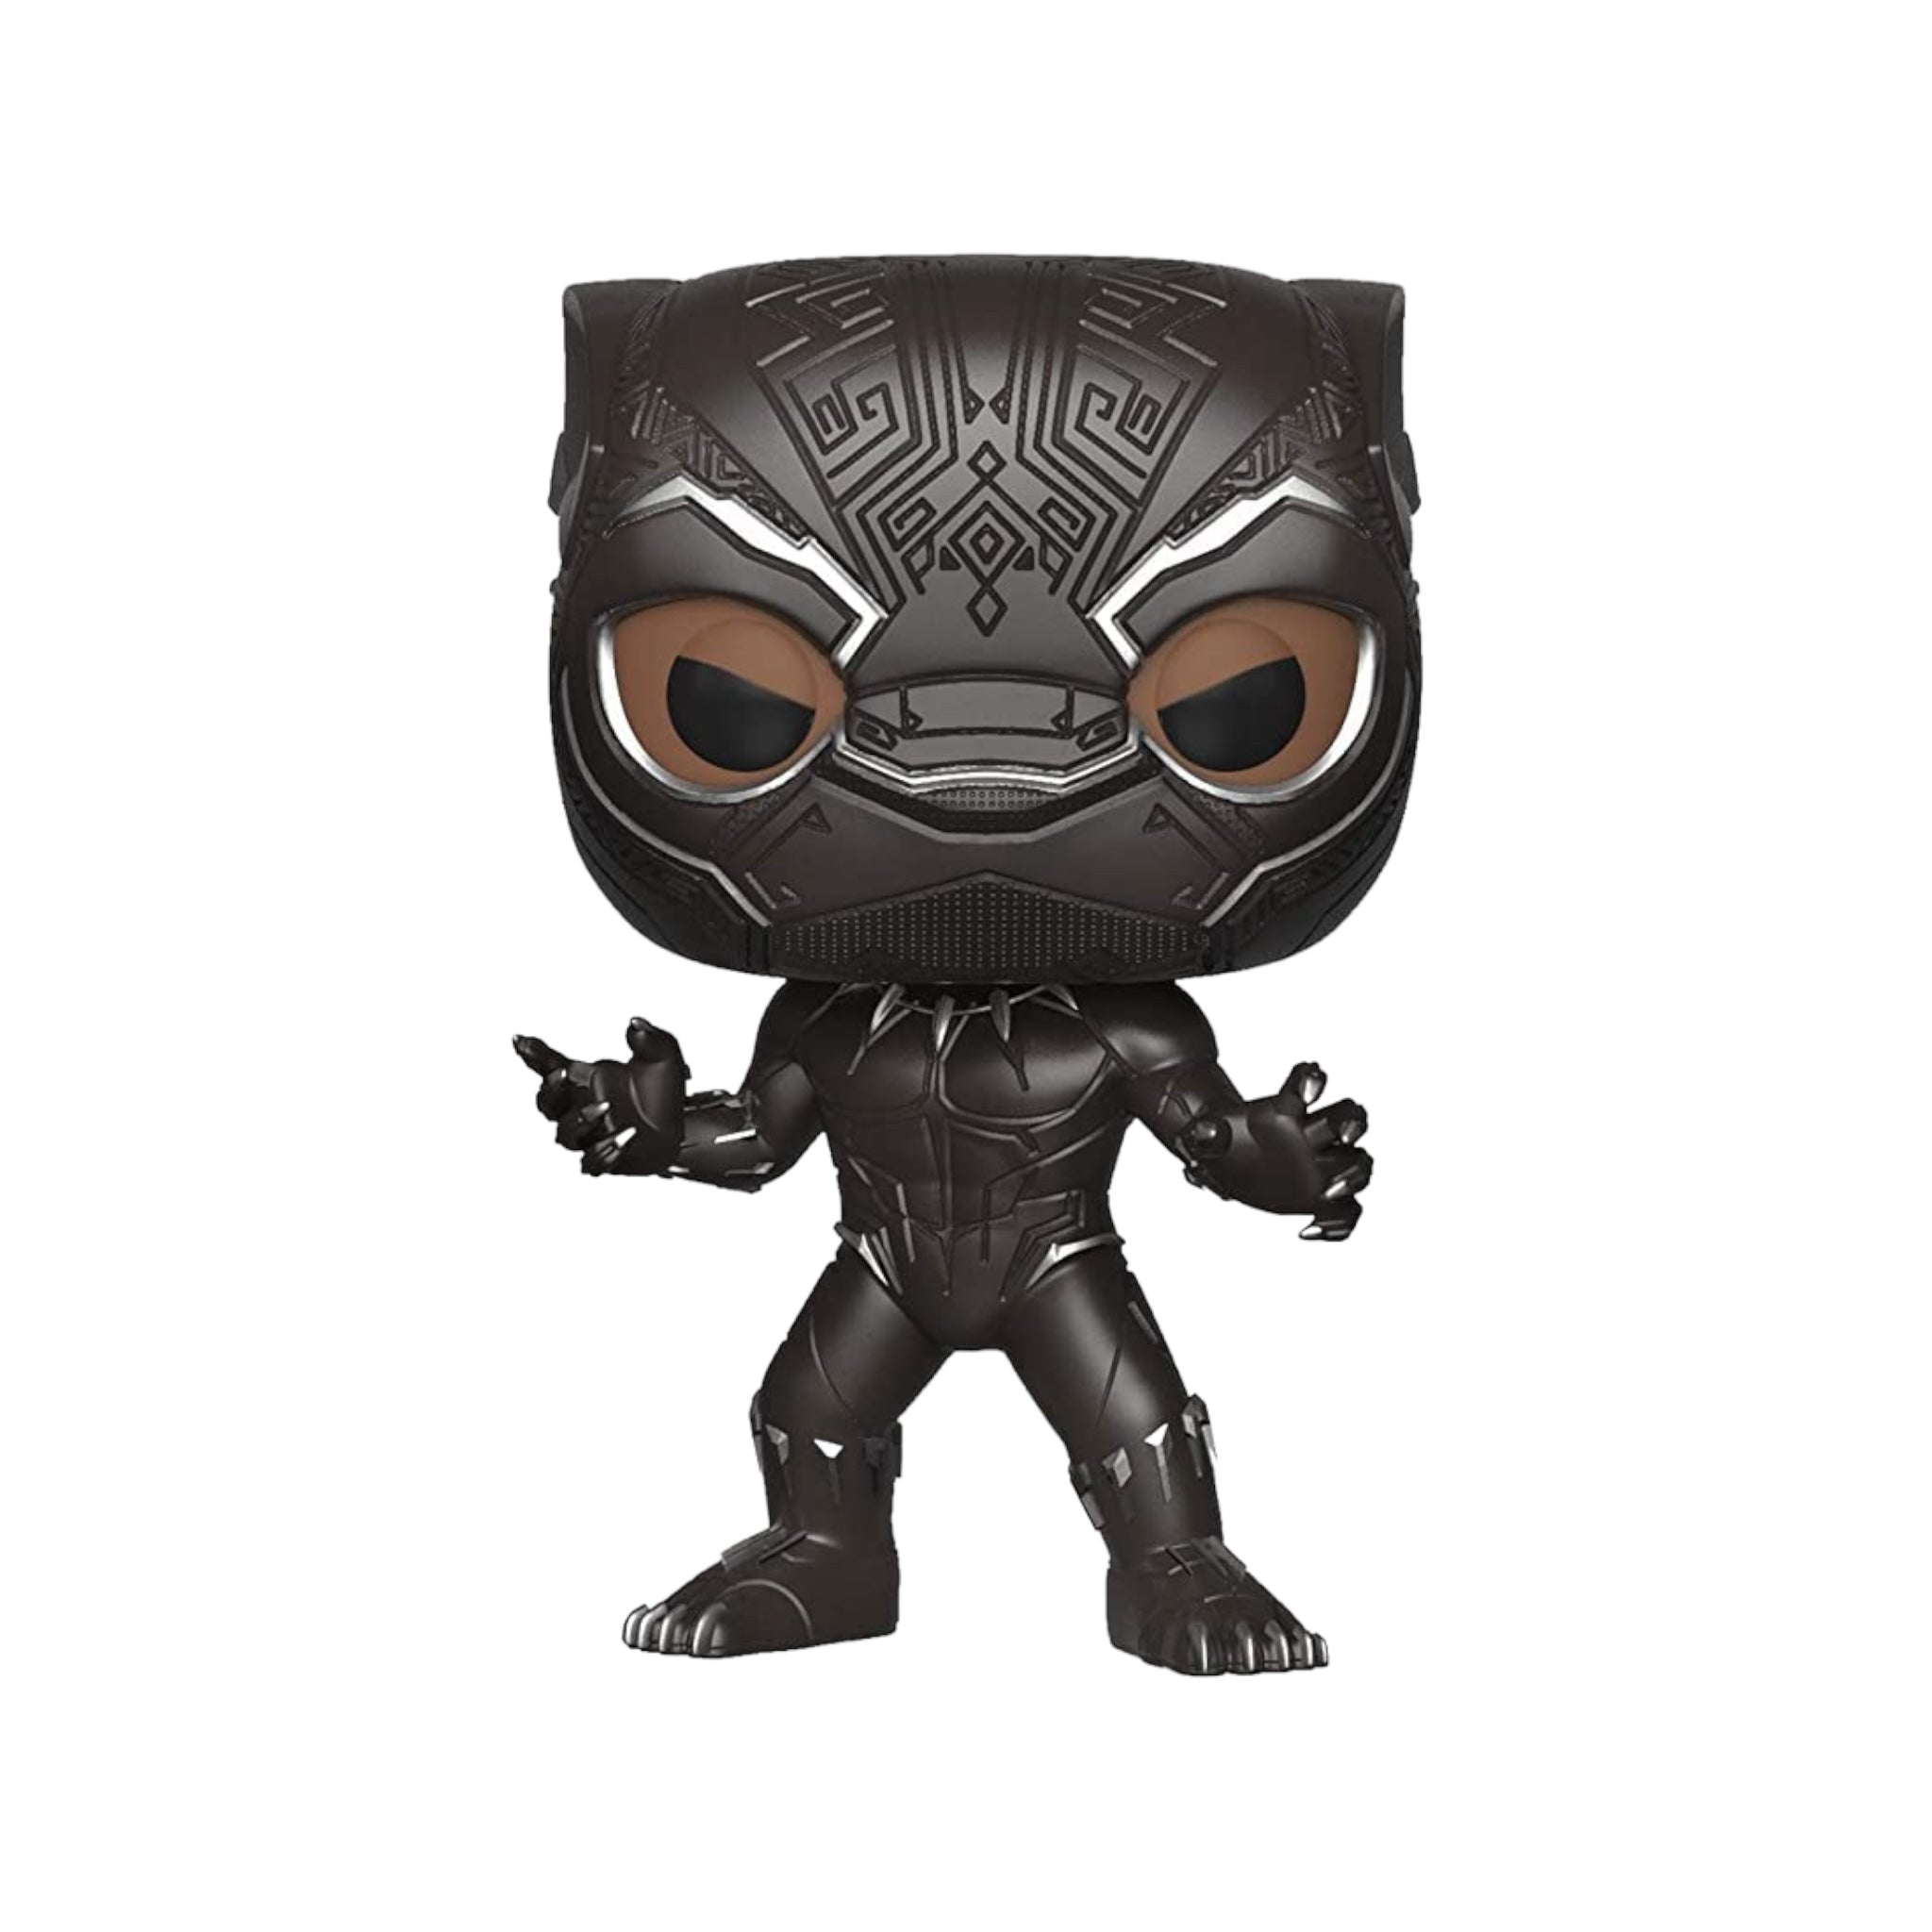 Black Panther #273 (Masked Chase) Funko Pop! - Black Panther